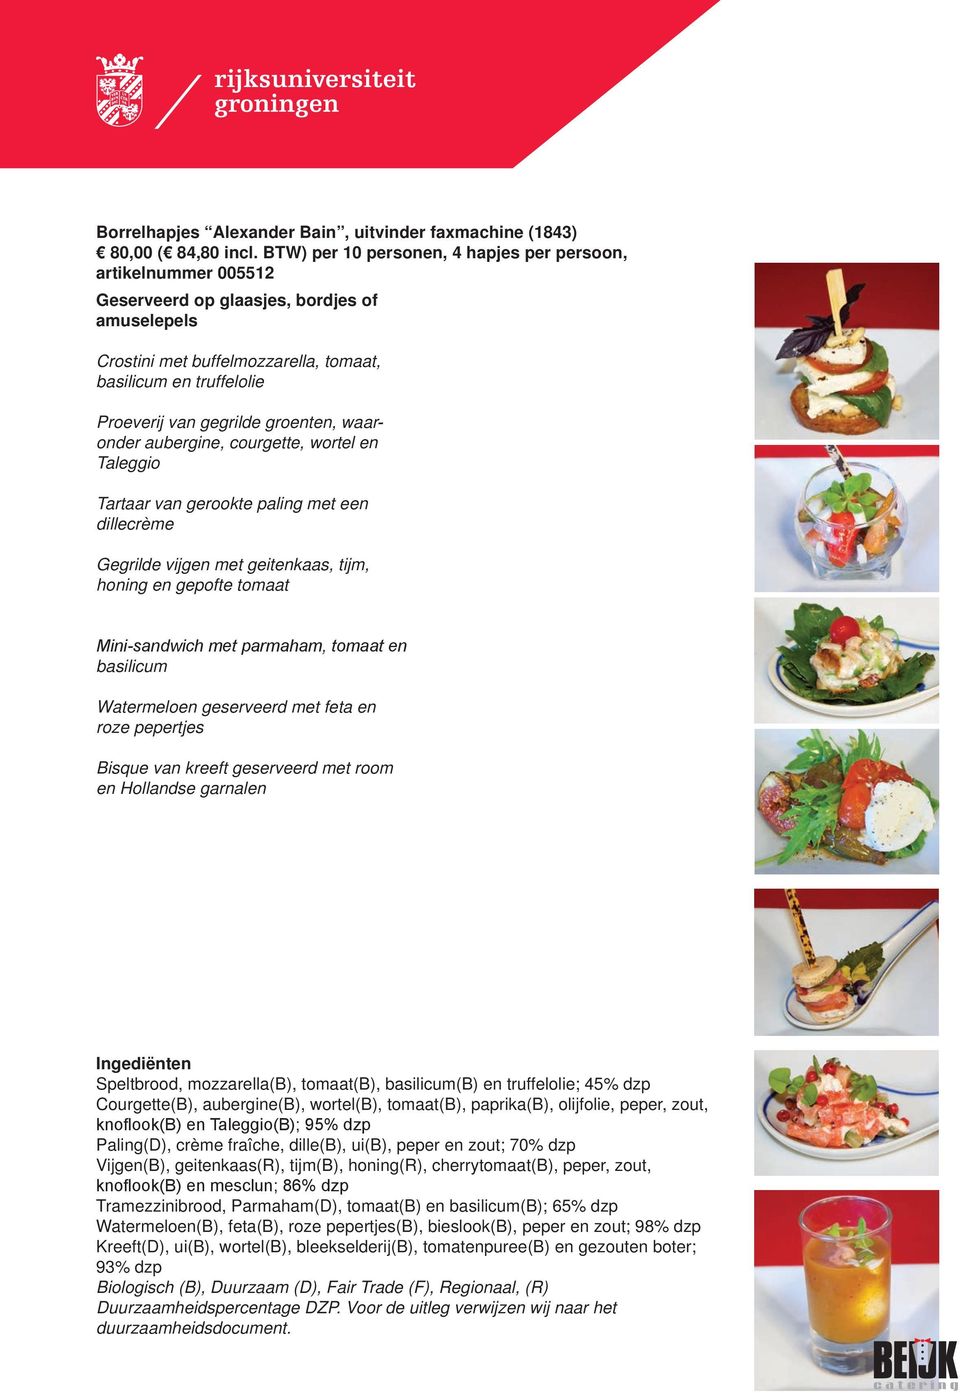 groenten, waaronder aubergine, courgette, wortel en Taleggio Tartaar van gerookte paling met een dillecrème Gegrilde vijgen met geitenkaas, tijm, honing en gepofte tomaat Mini-sandwich met parmaham,